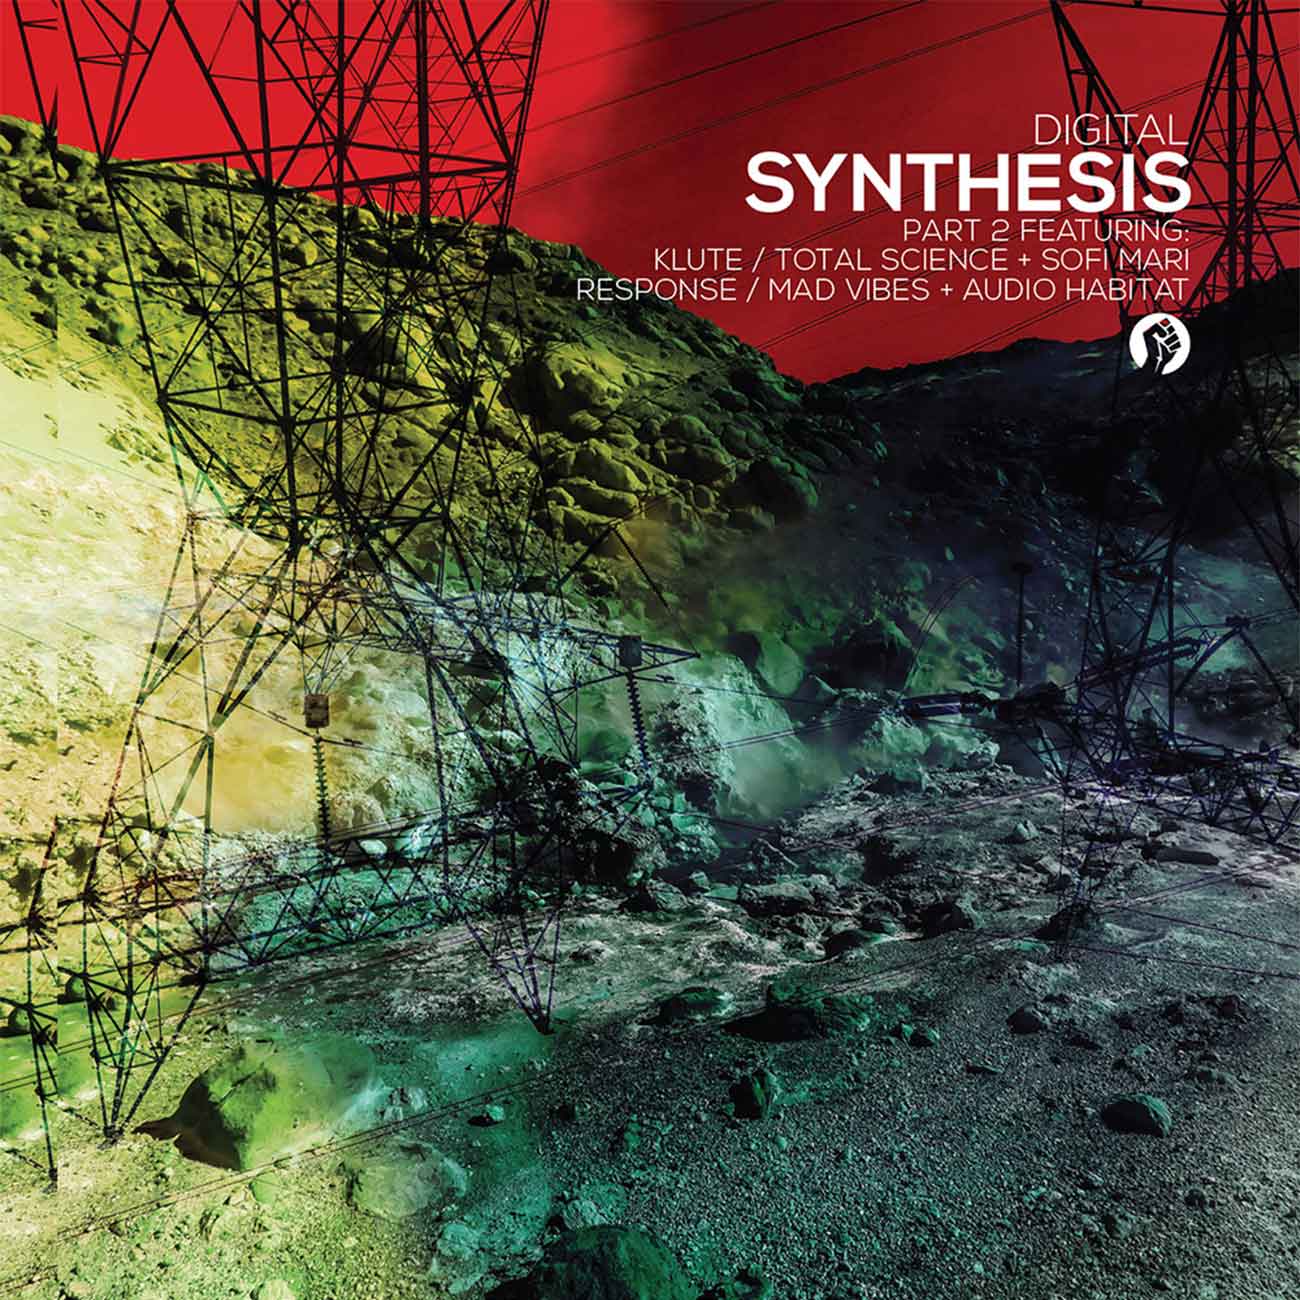 Digital - 'Synthesis' Album Part 2 & 3 - April 2016